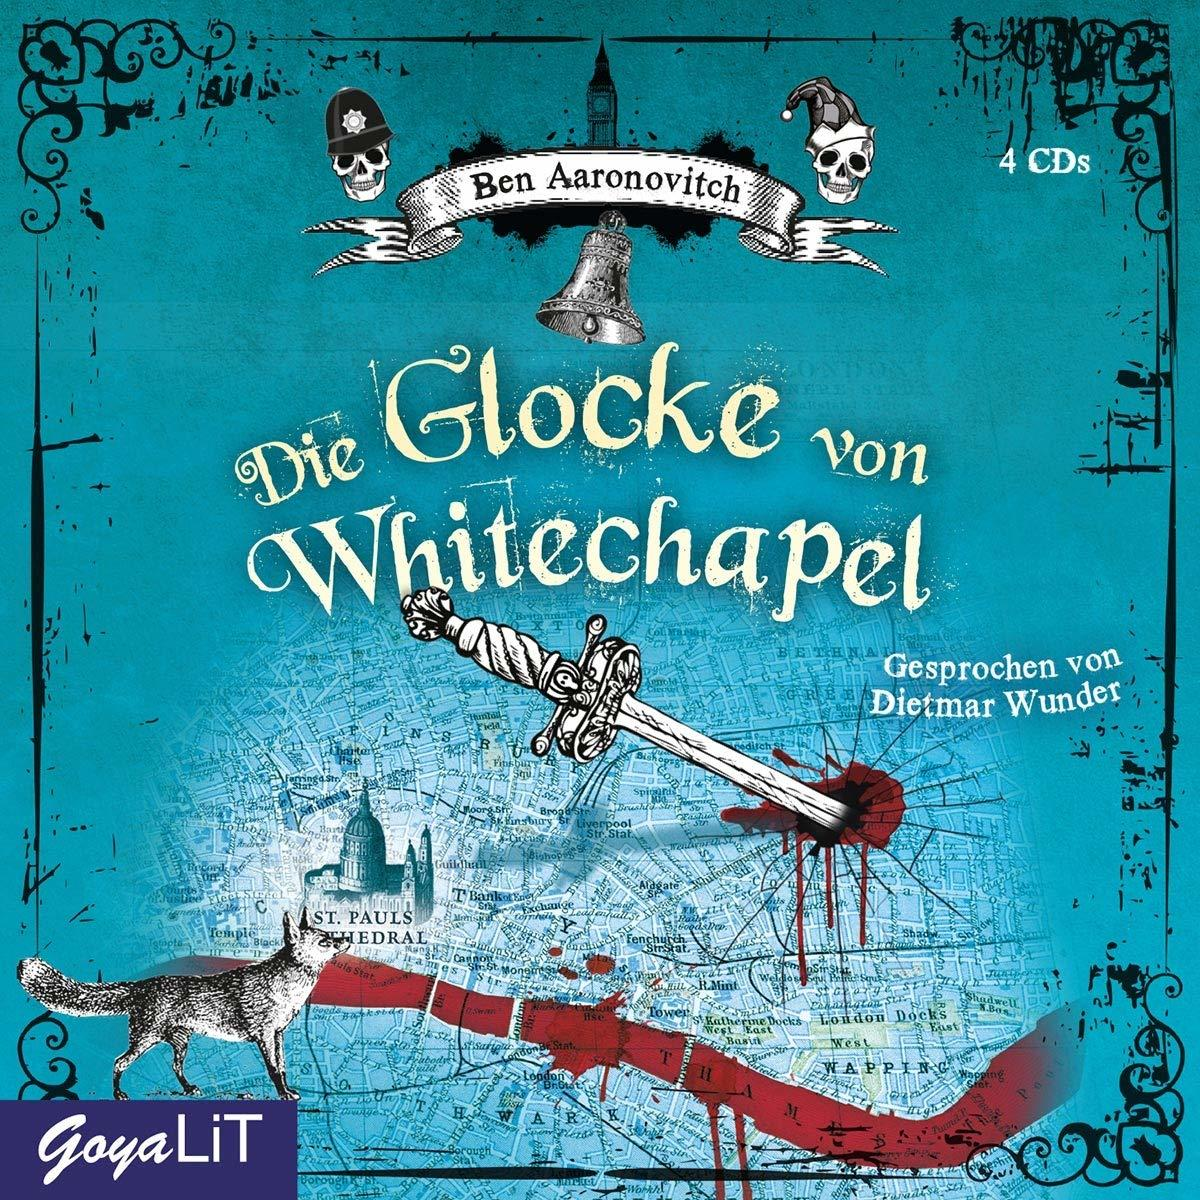 - Ben Whitechapel - Aaronovitch Von Glocke Die (CD)